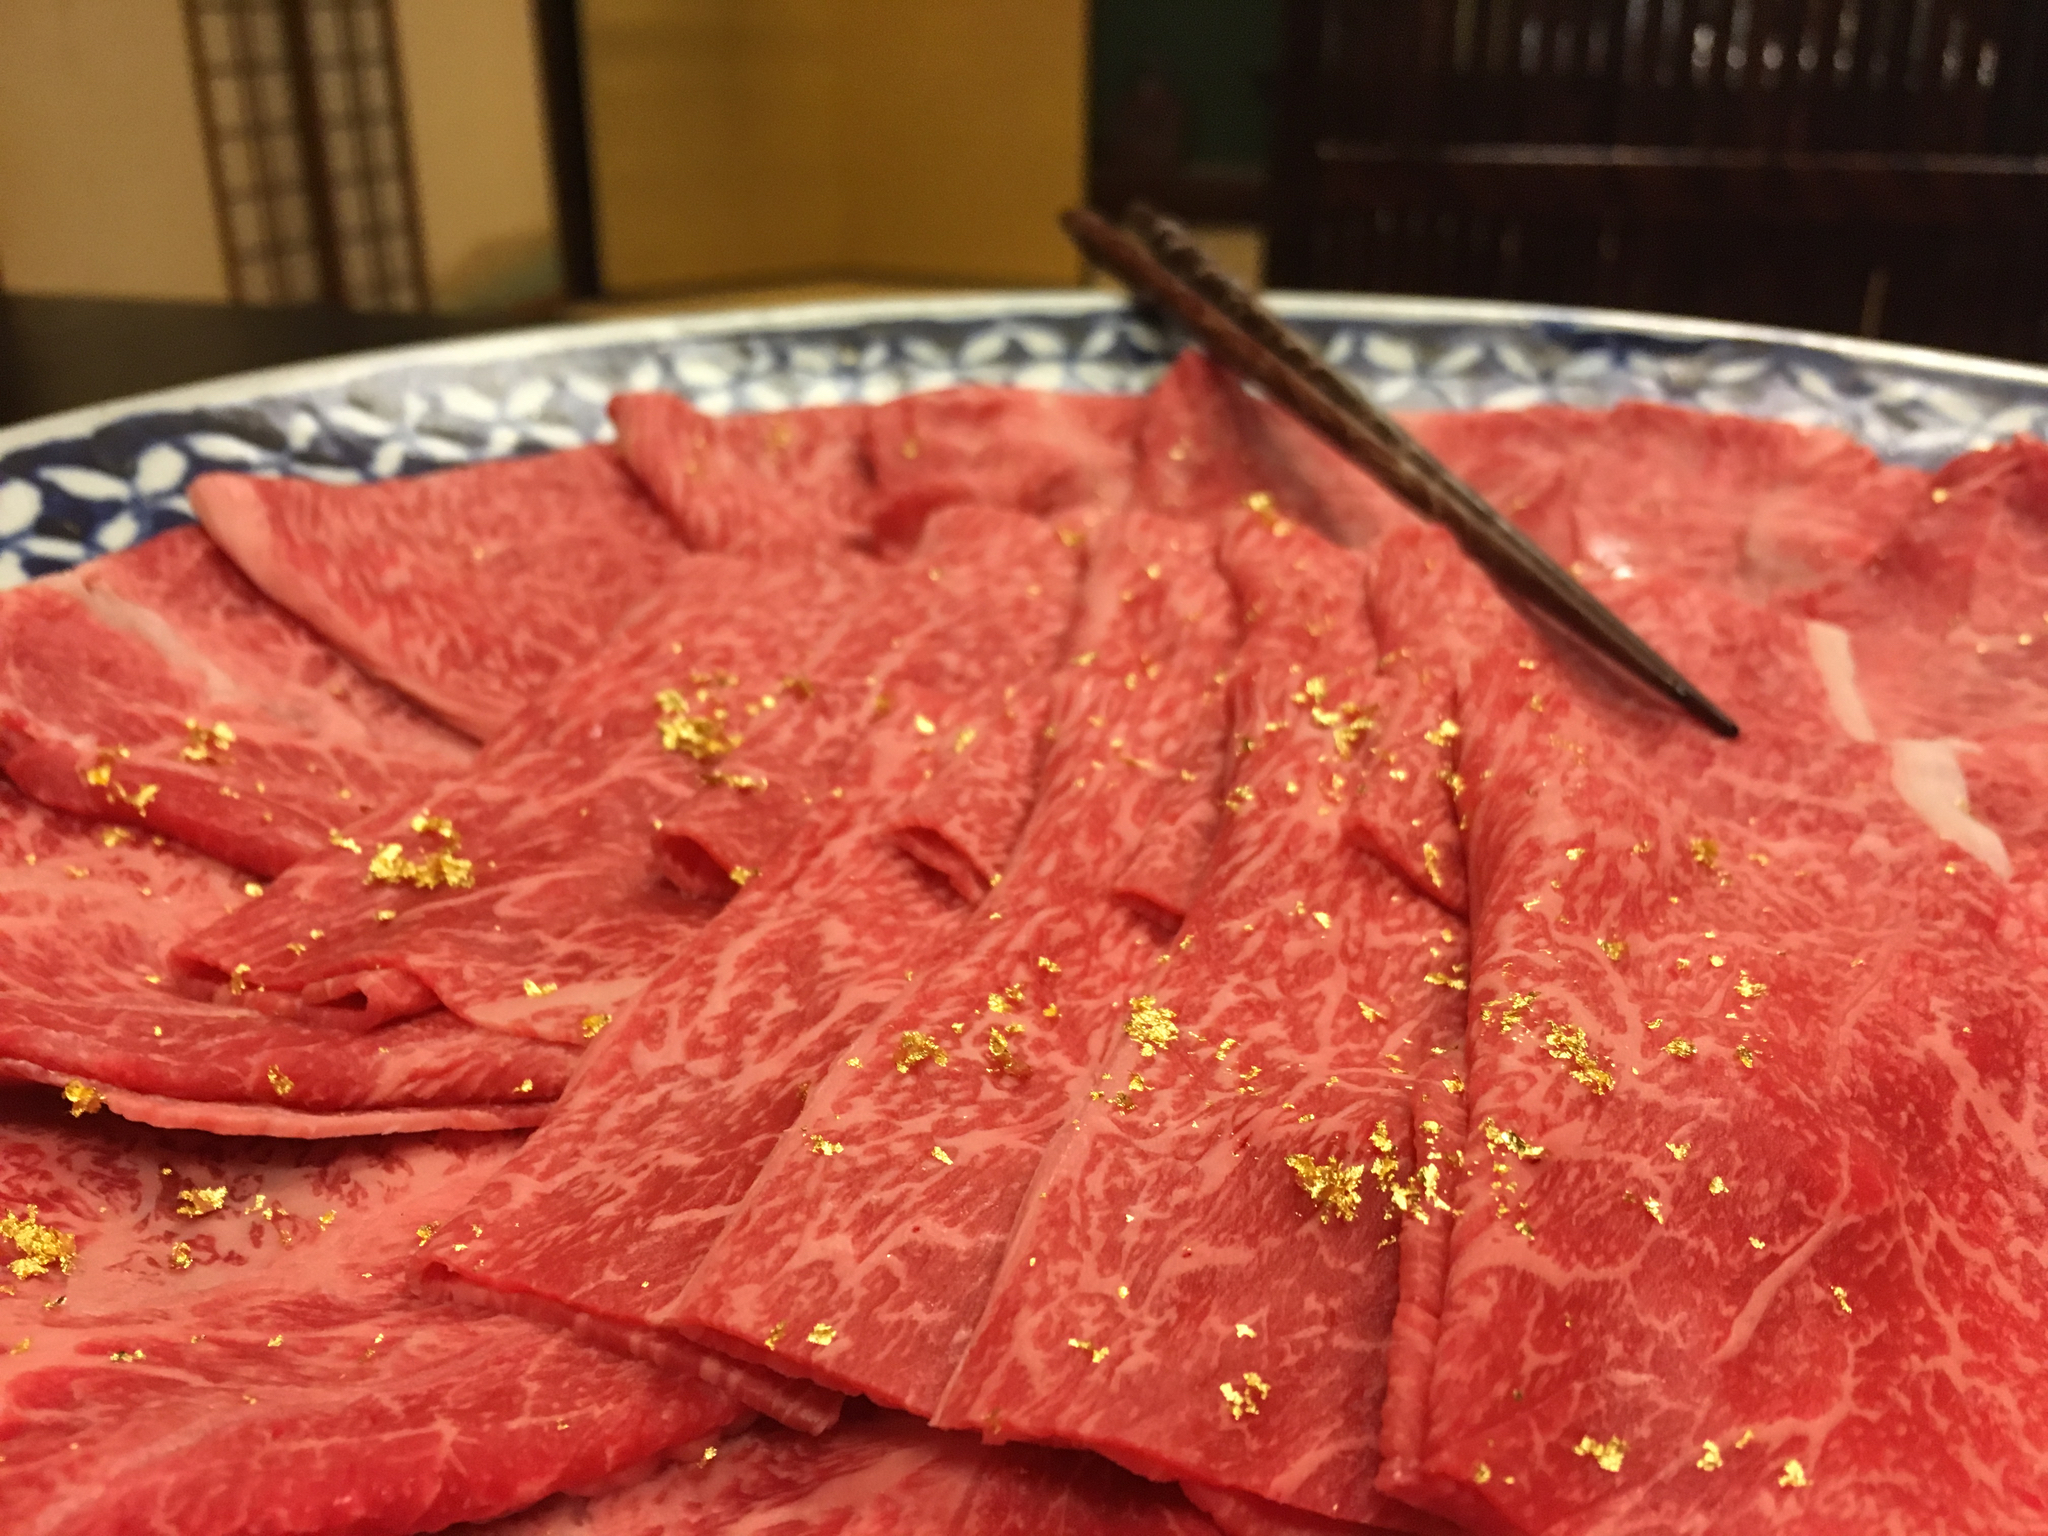 Yes, that's gold leaf on our hida beef for shabu shabu